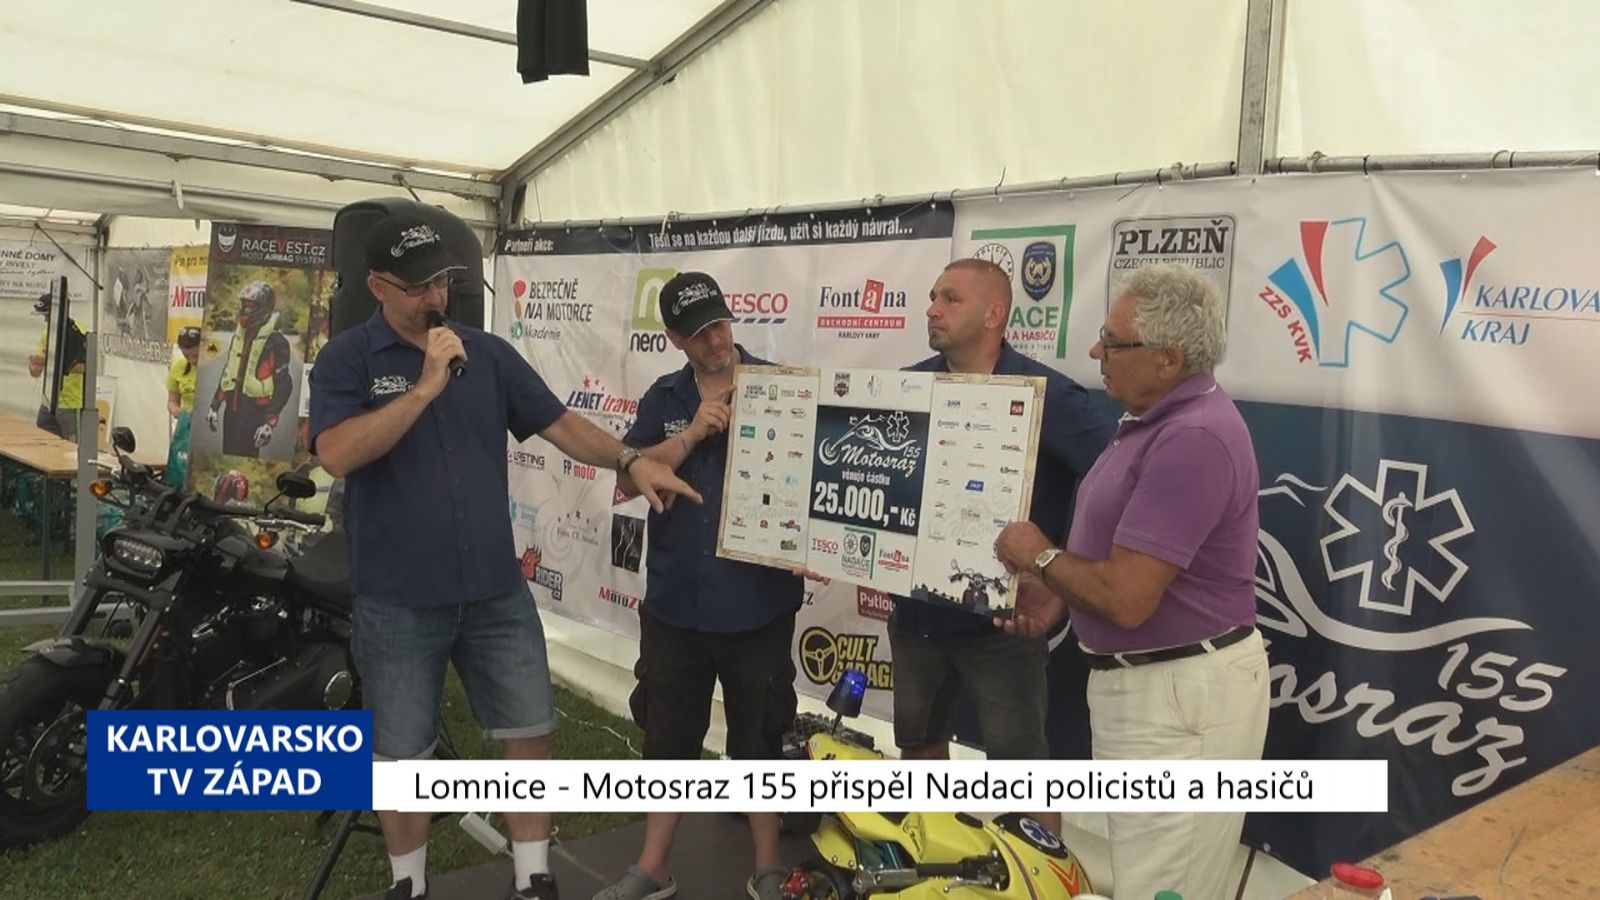 Lomnice: Motosraz 155 přispěl Nadaci policistů a hasičů (TV Západ)